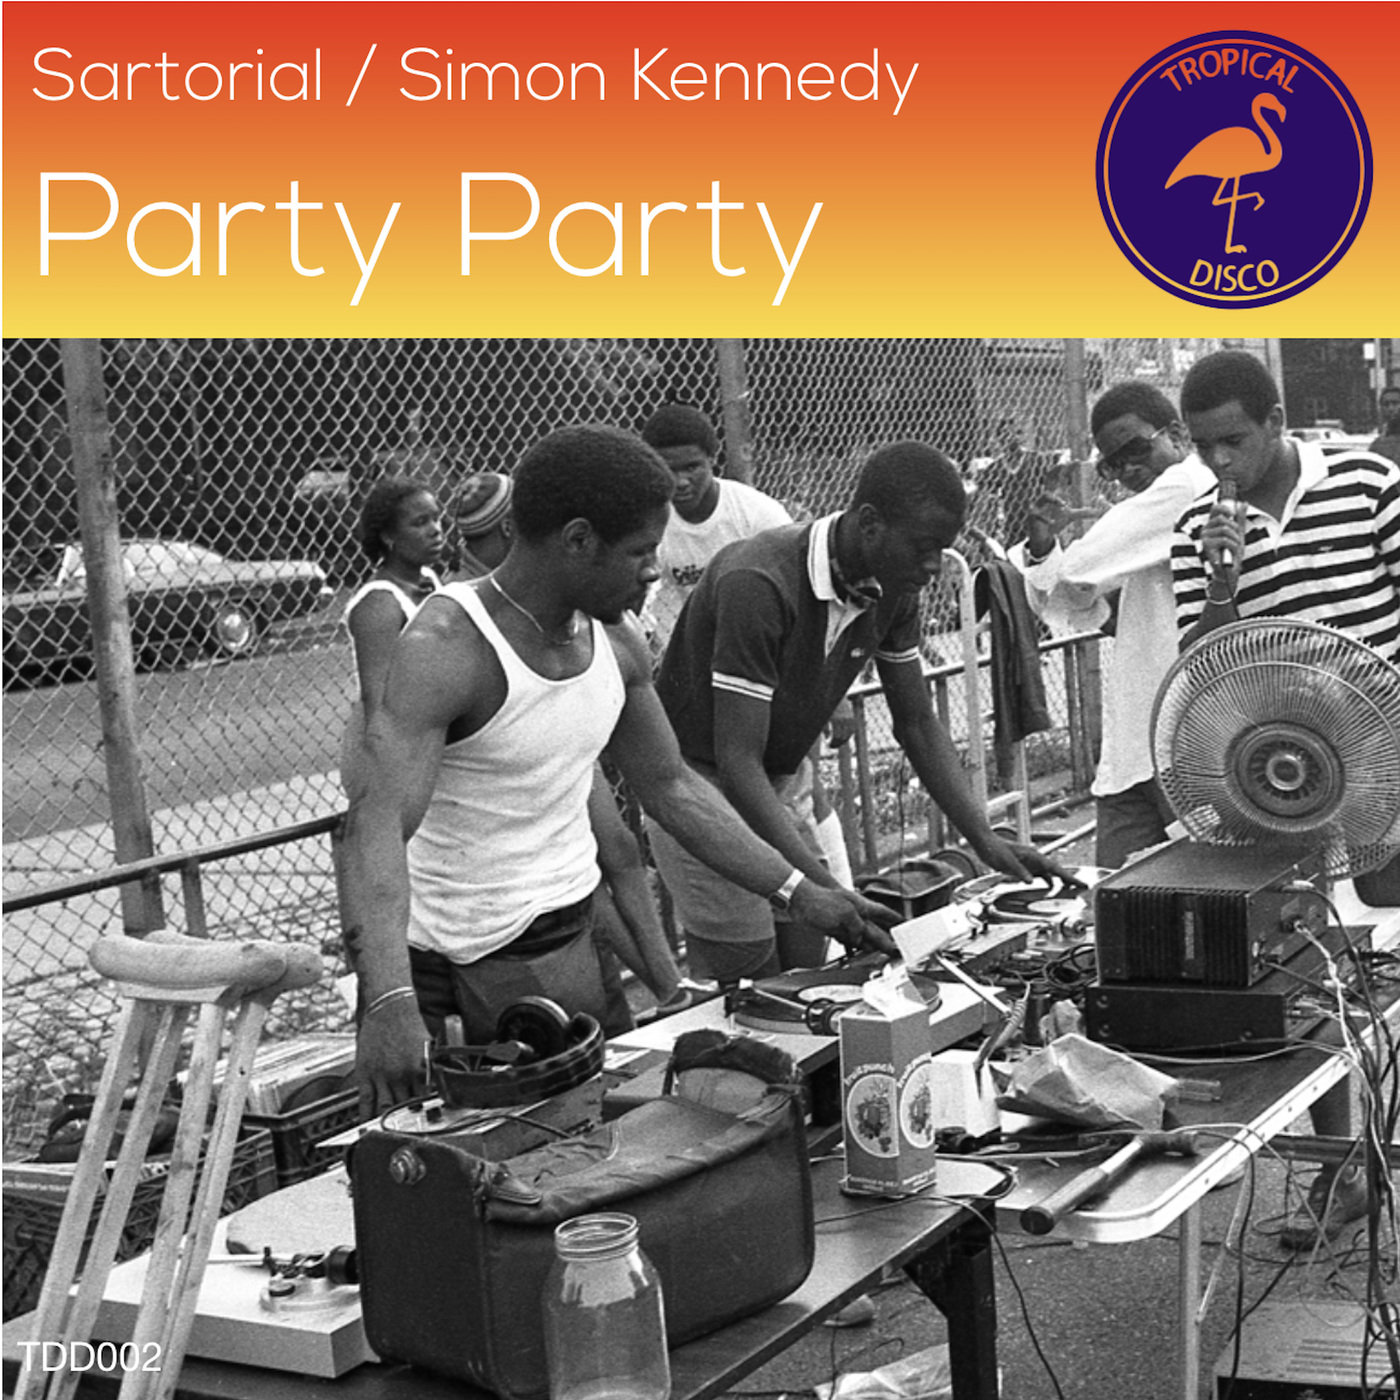 Sartorial & Simon Kennedy - Party Party / Tropical Disco Records